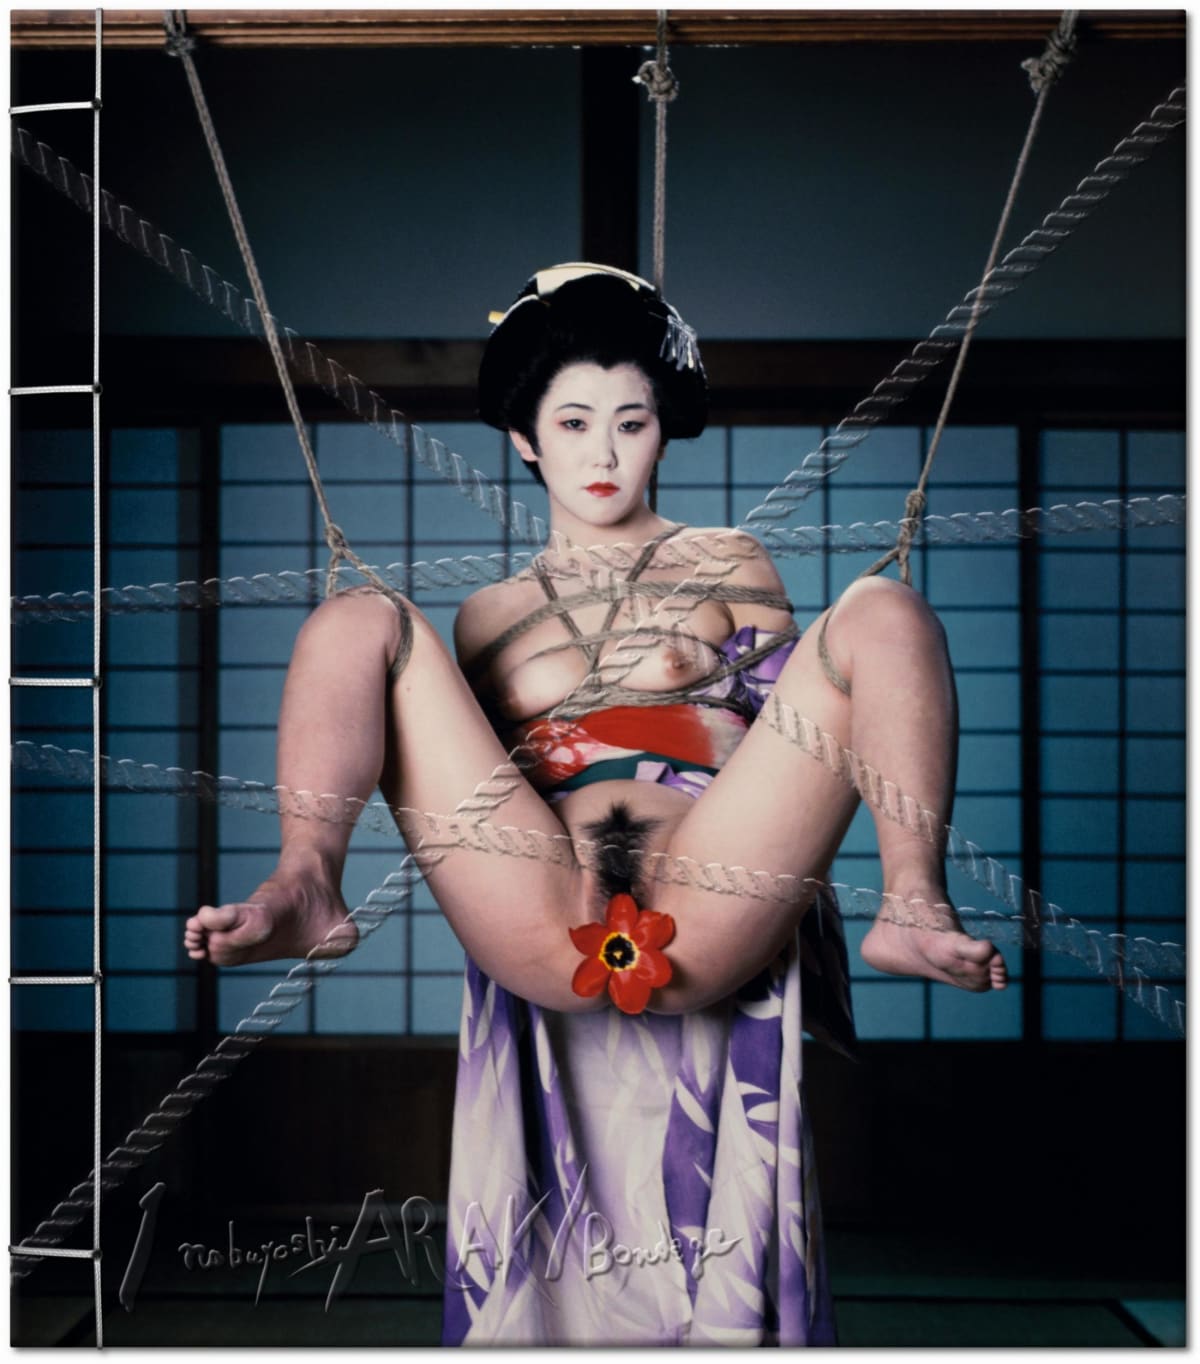 Araki. Bondage. Art Edition No. 1–50 ‘Untitled, 1990’